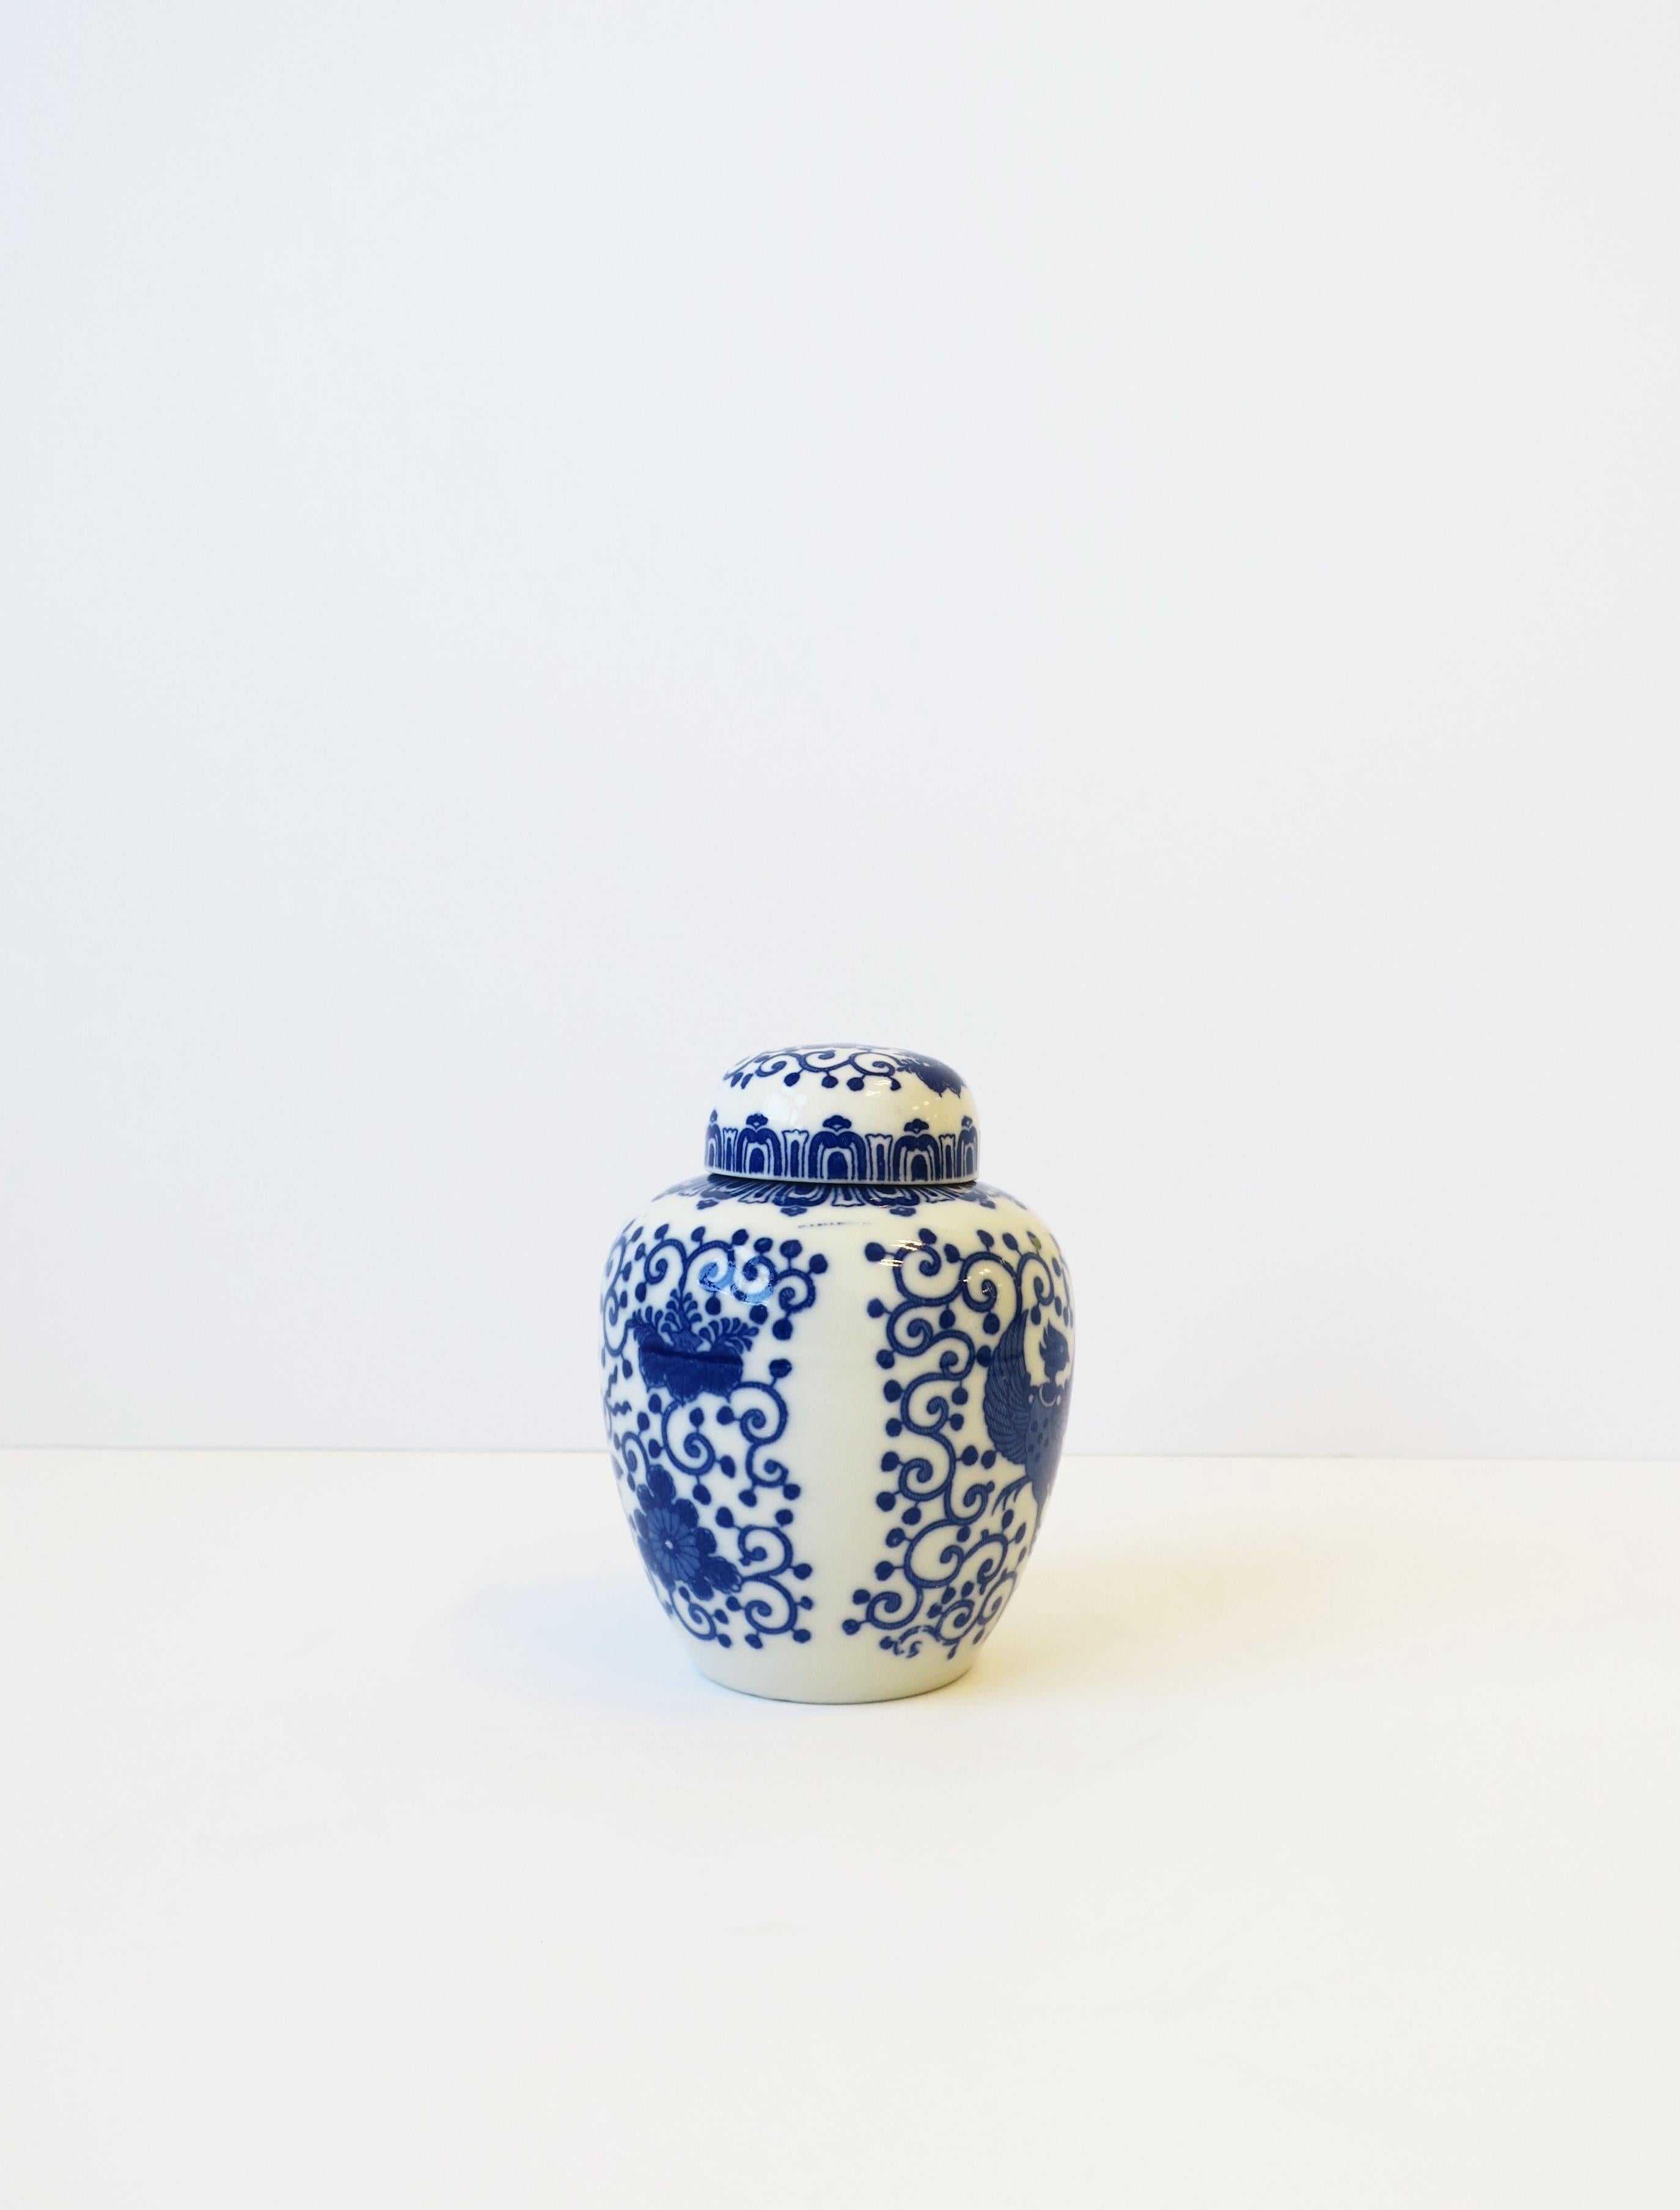 Glazed Blue and White Porcelain Japanese Ginger Jars, Set